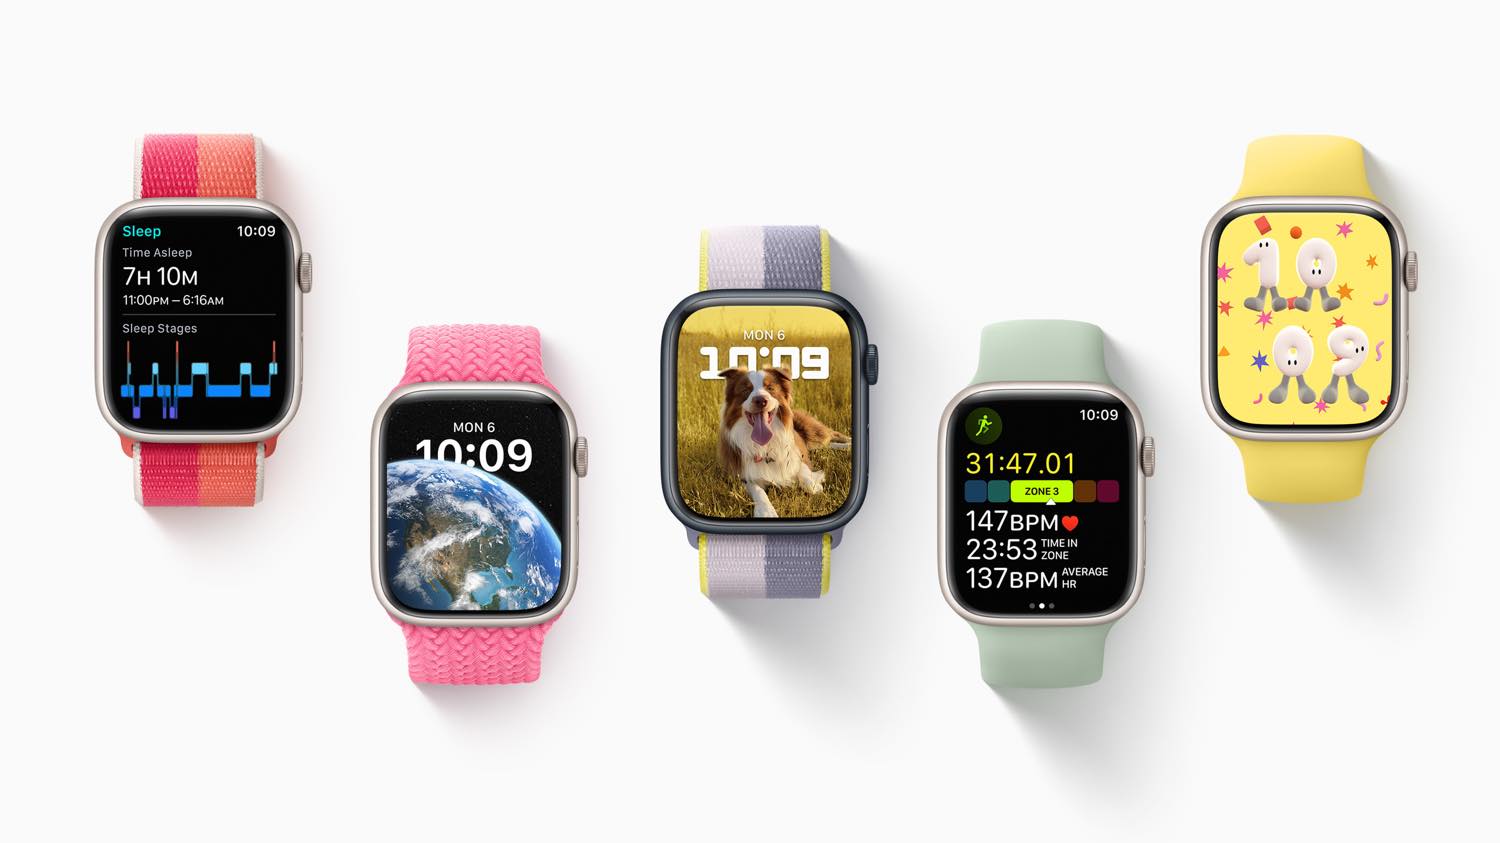 ｢Apple Watch Series 8｣の(PRODUCT)REDモデルの赤色は新しい色合いに − パッケージの詳細情報も